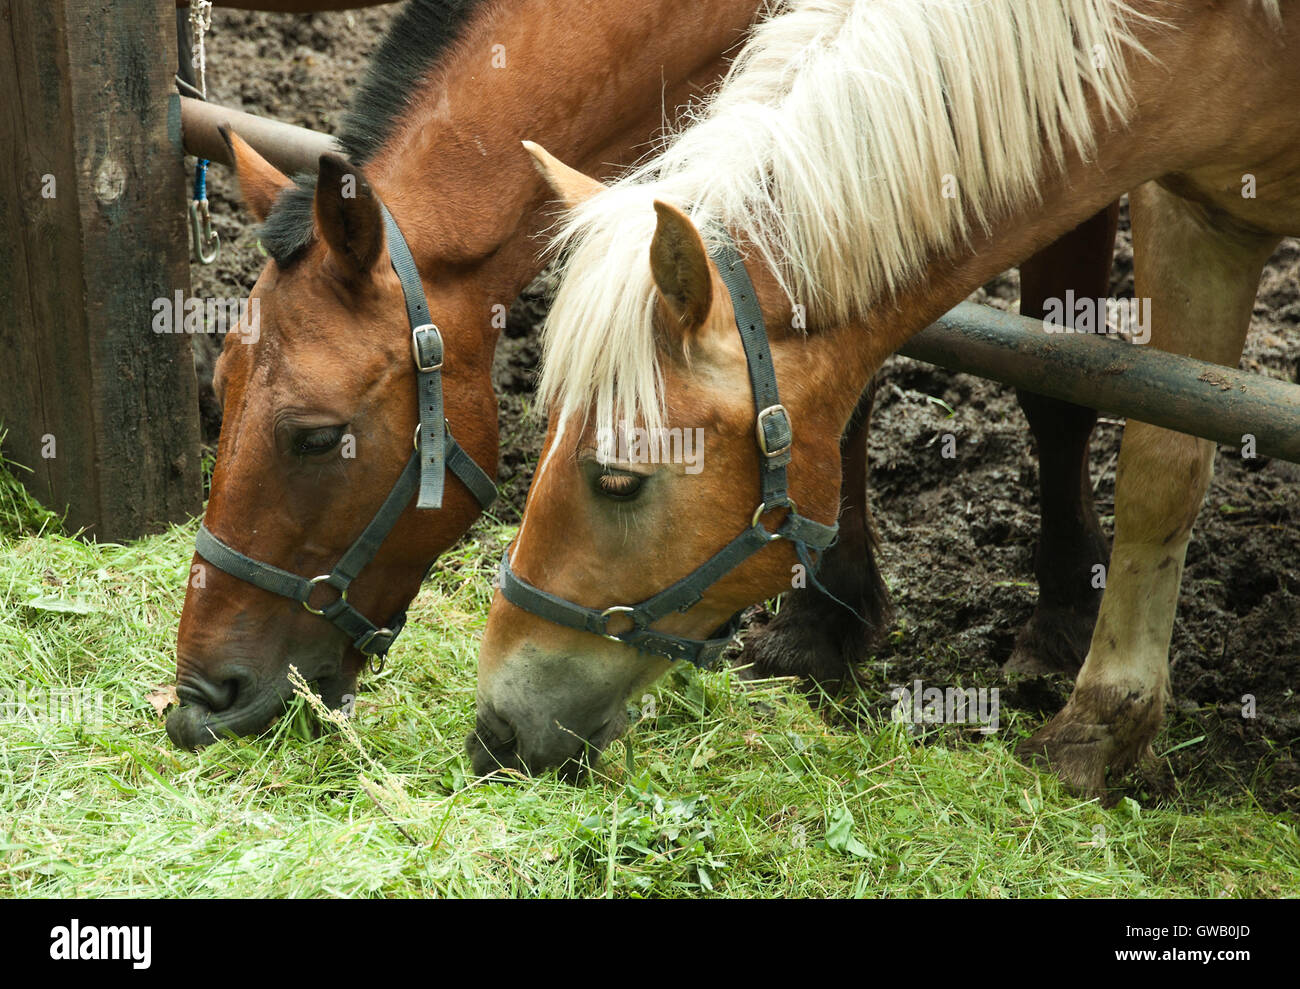 Züchtung landwirtschaftlicher Bild: zwei Pferde auf einer Farm, die Fütterung von grünen Rasen. Stockfoto